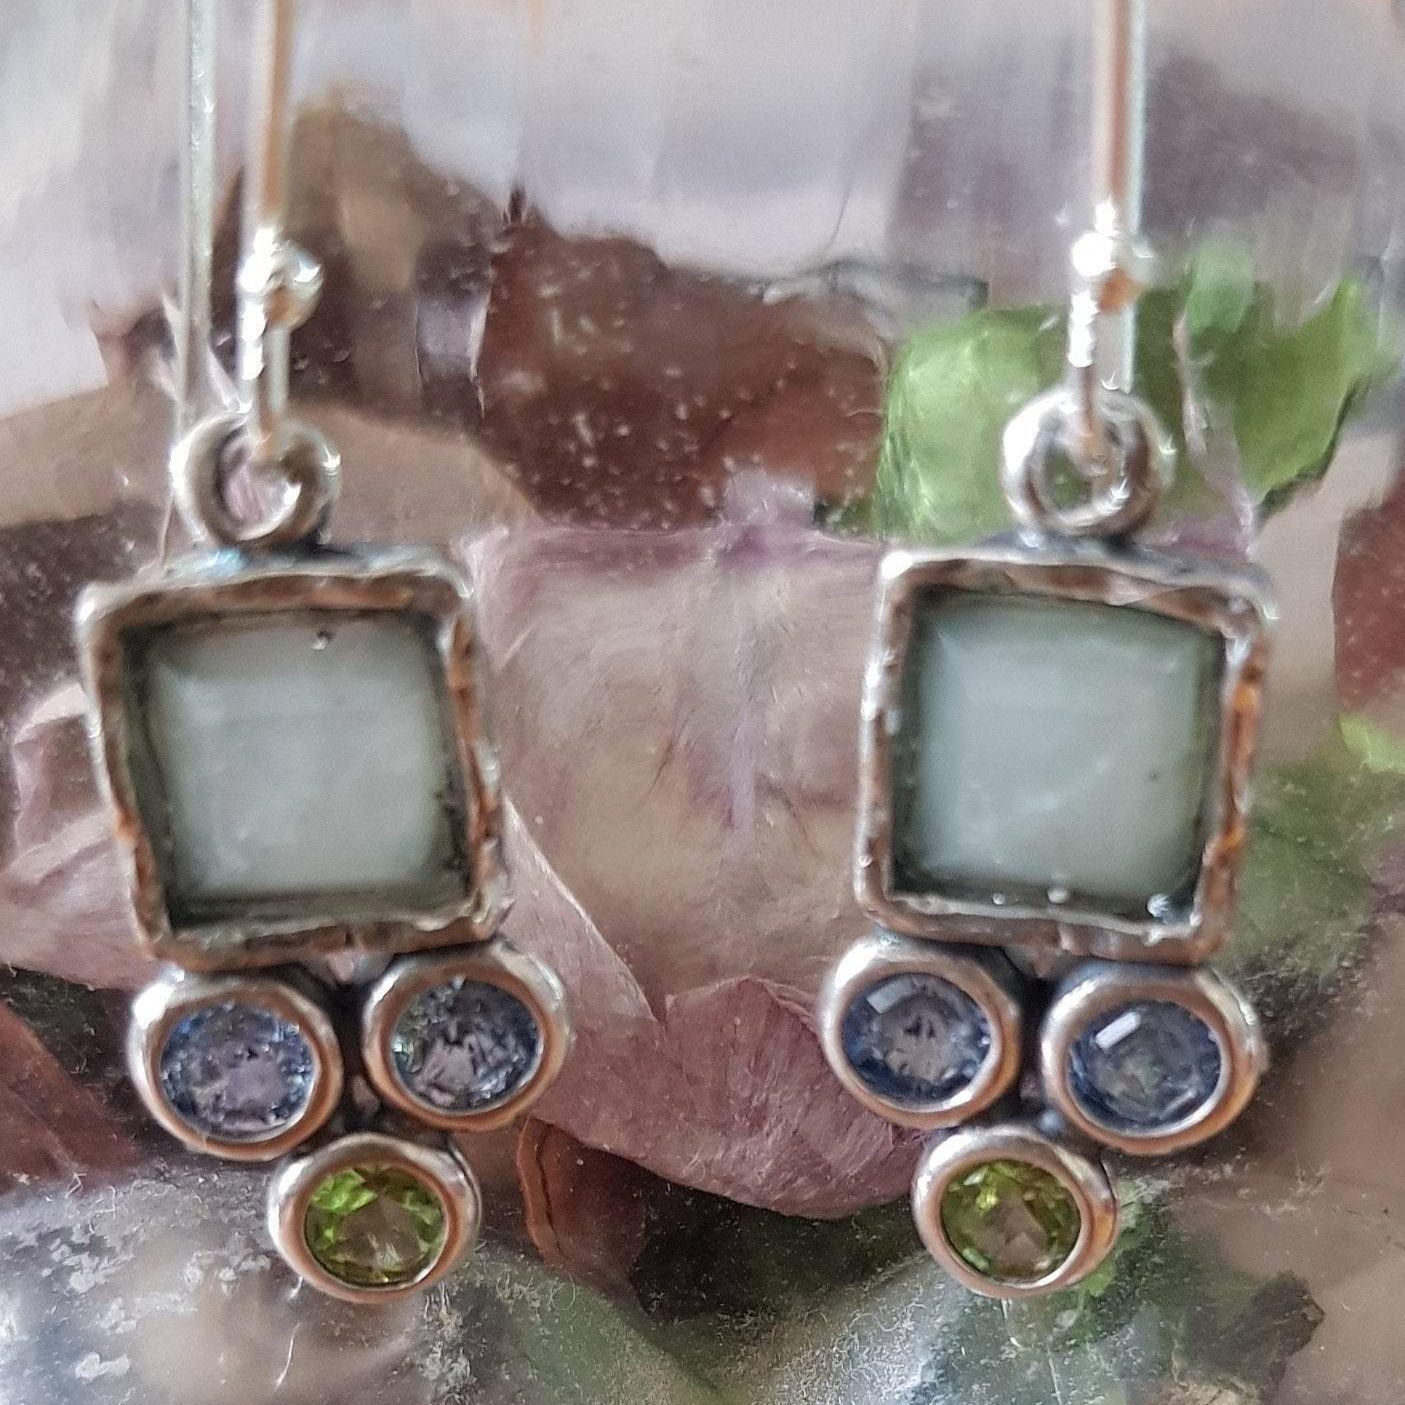 Bluenoemi Jewelry Earrings Vibrant sterling silver earrings for women - dangling gemstones & cubic zirconia earrings - Bluenoemi sterling jewelers